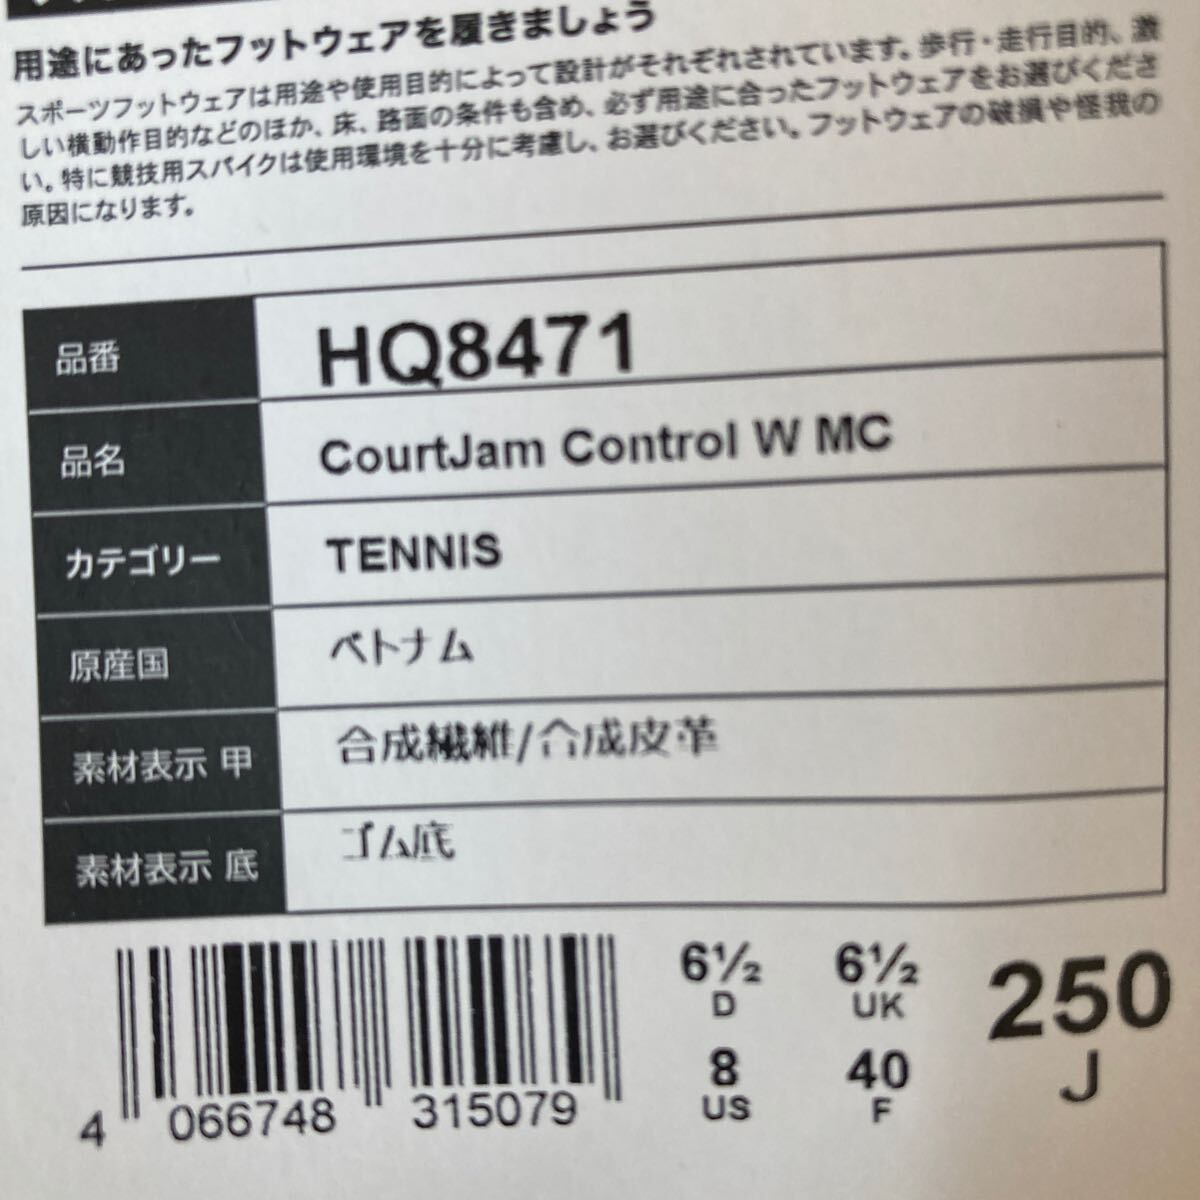 新品 アディダス コートジャムコントロール W MC 25cm HQ8471_画像3